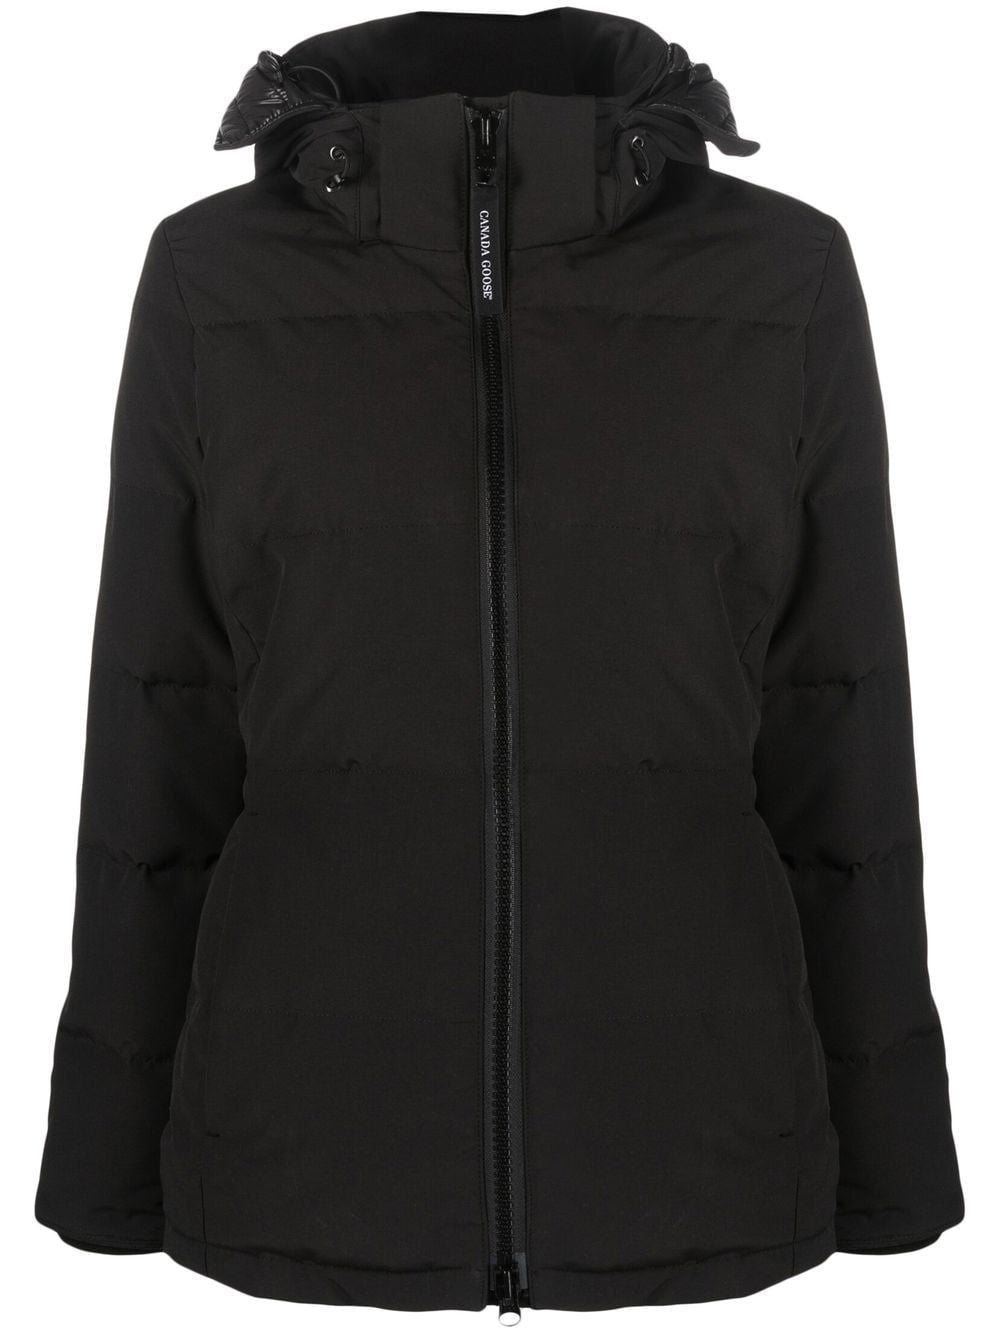 FW22女款黑色帕卡夹克 - 时尚、保暖、时尚！